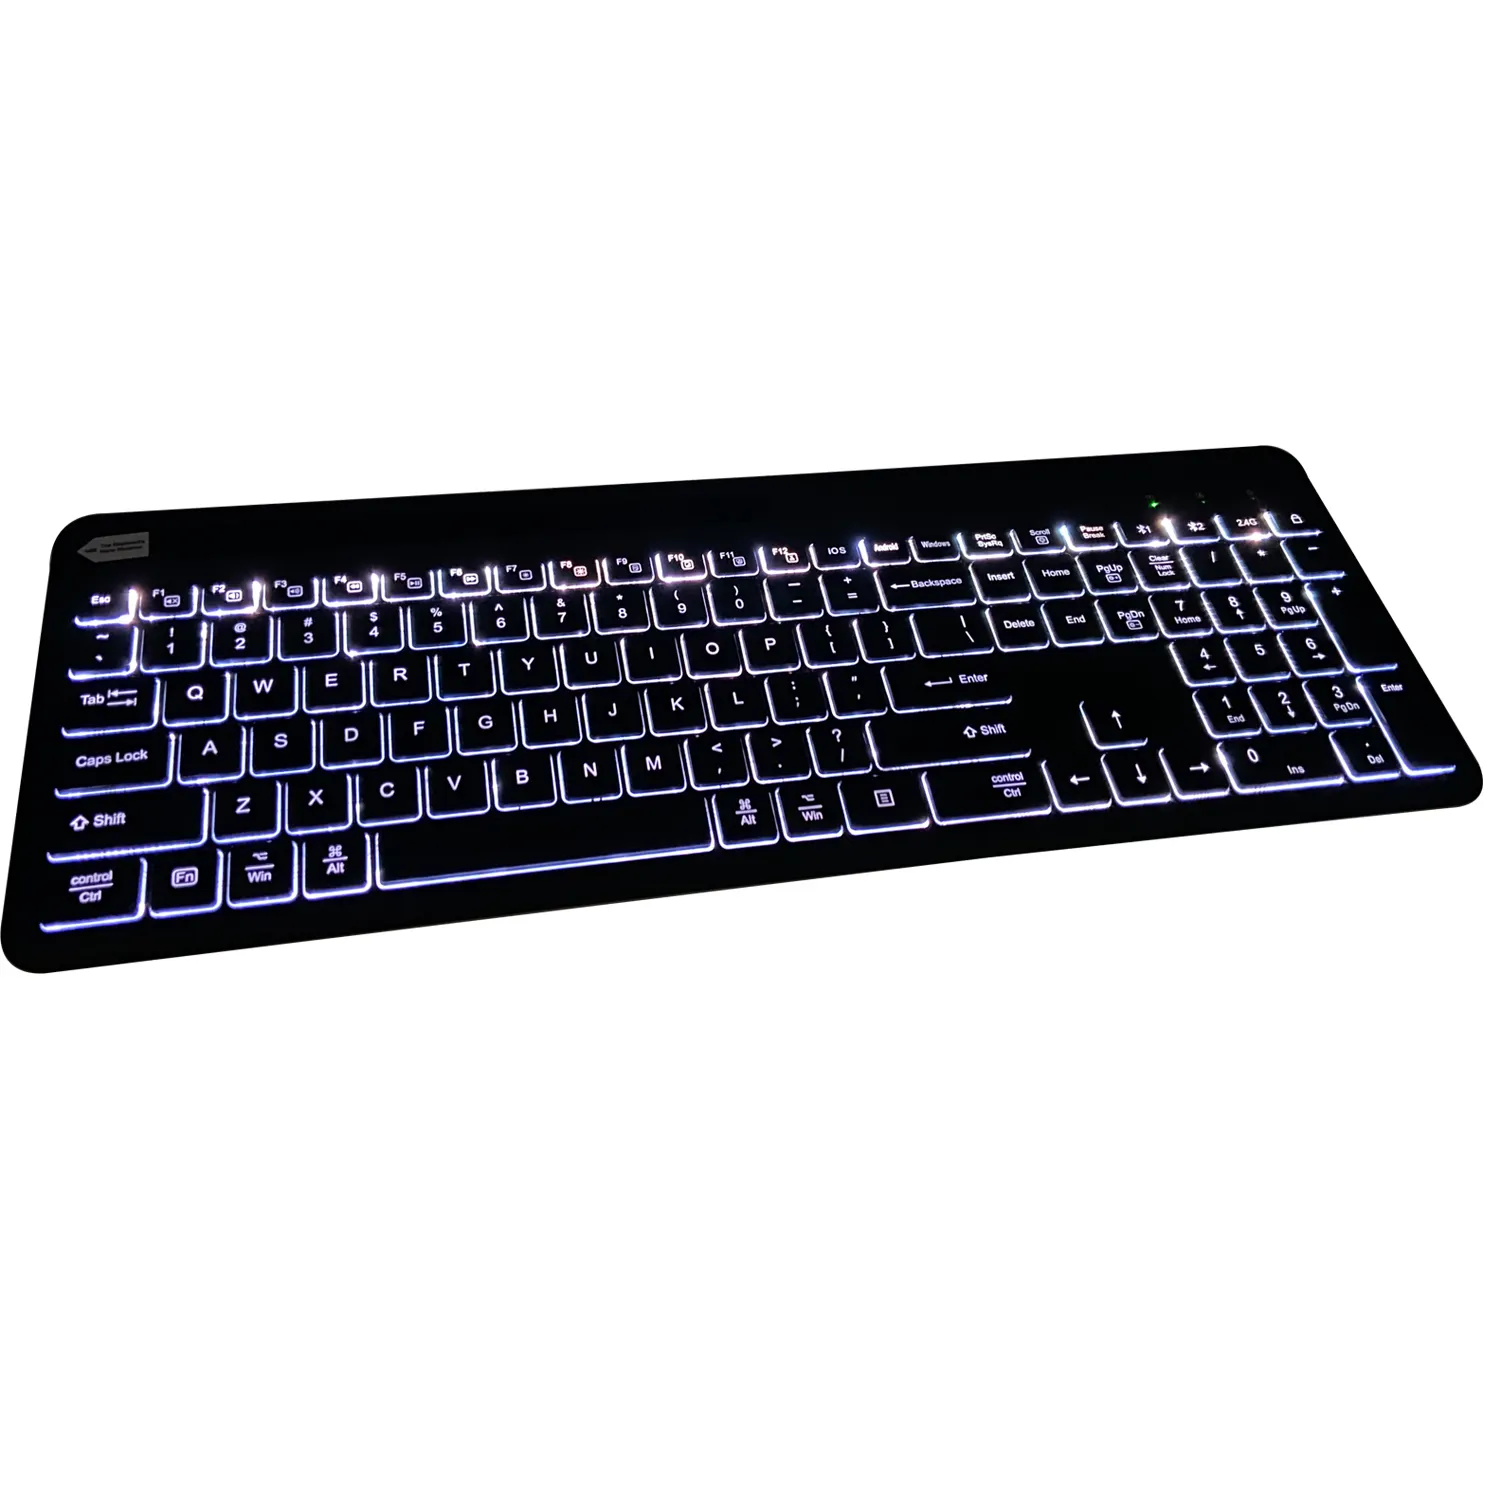 Dongguan özelleştirilmiş hissediyorum Laptop gelişmiş kalite kopya ve macun multimedya İbranice İnce sessiz BT LED klavye mi Pad için 5